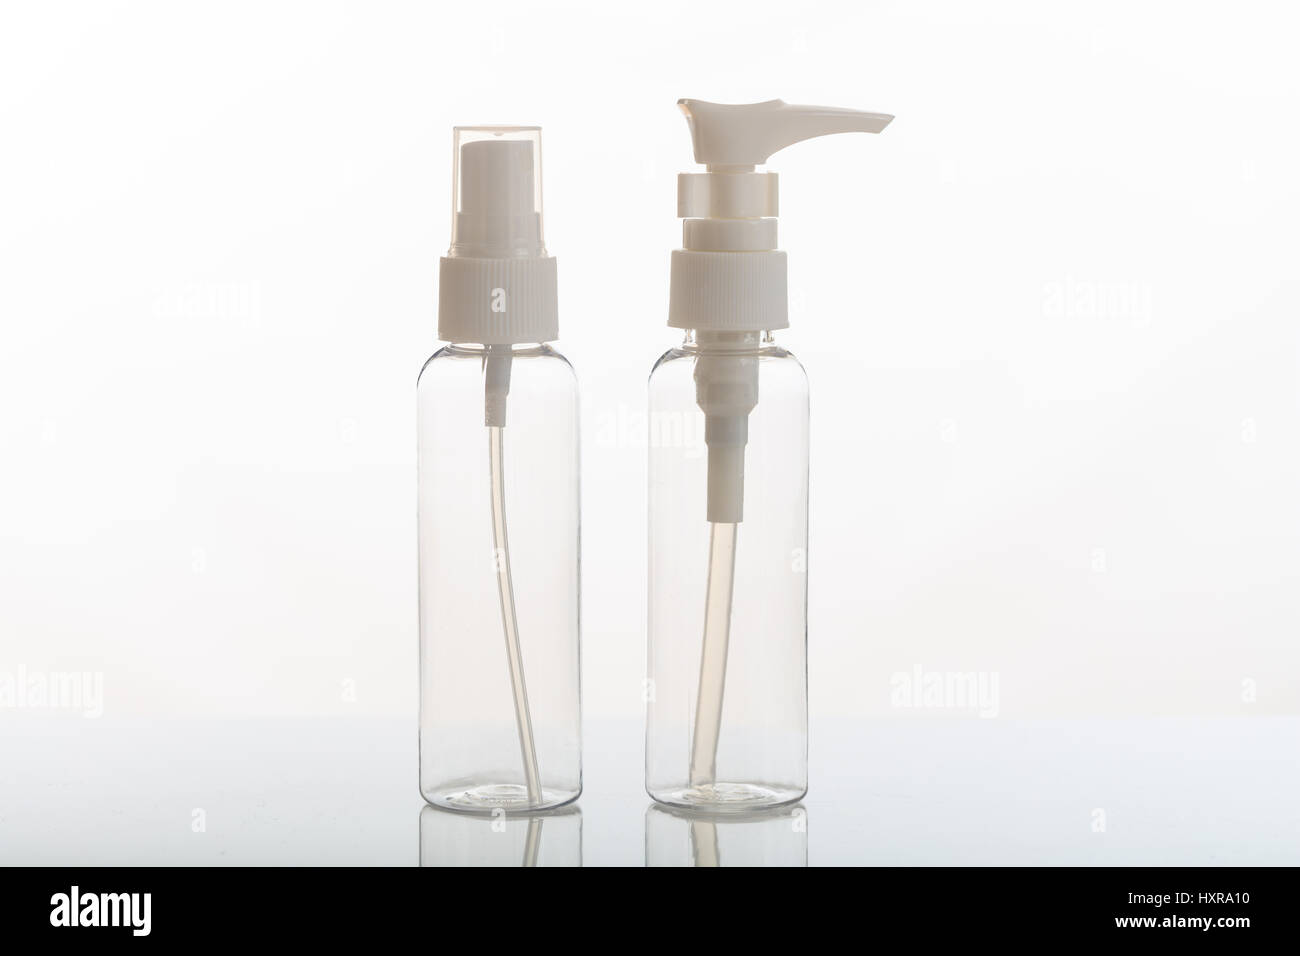 Vuoto trasparente flaconi cosmetici isolati su sfondo bianco Foto Stock